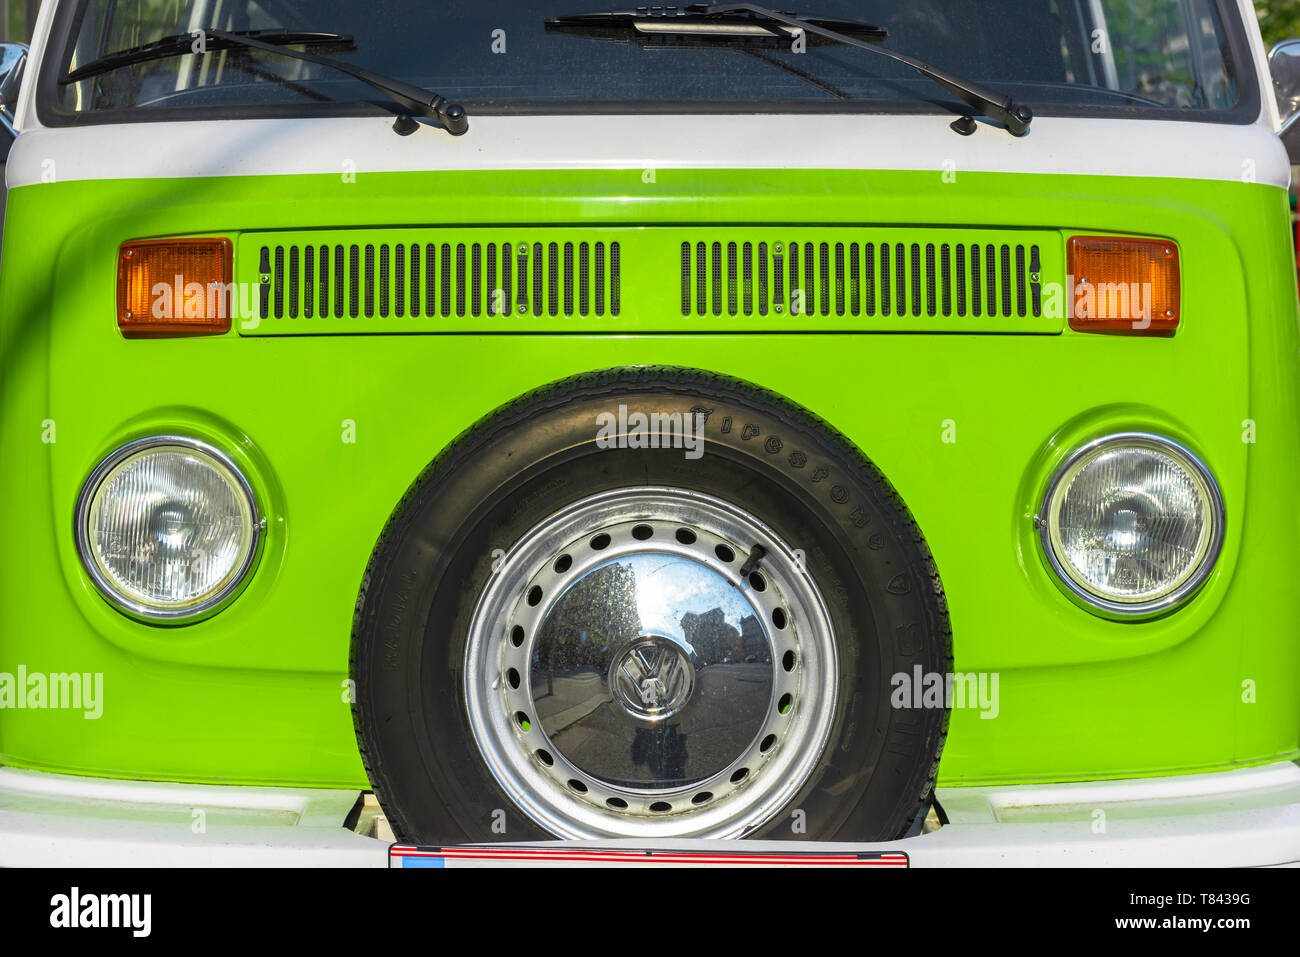 VW-Wohnmobil, Blick auf die Vorderseite eines klassischen 1970s VW-Wohnwagens in leuchtendem Grün. Stockfoto